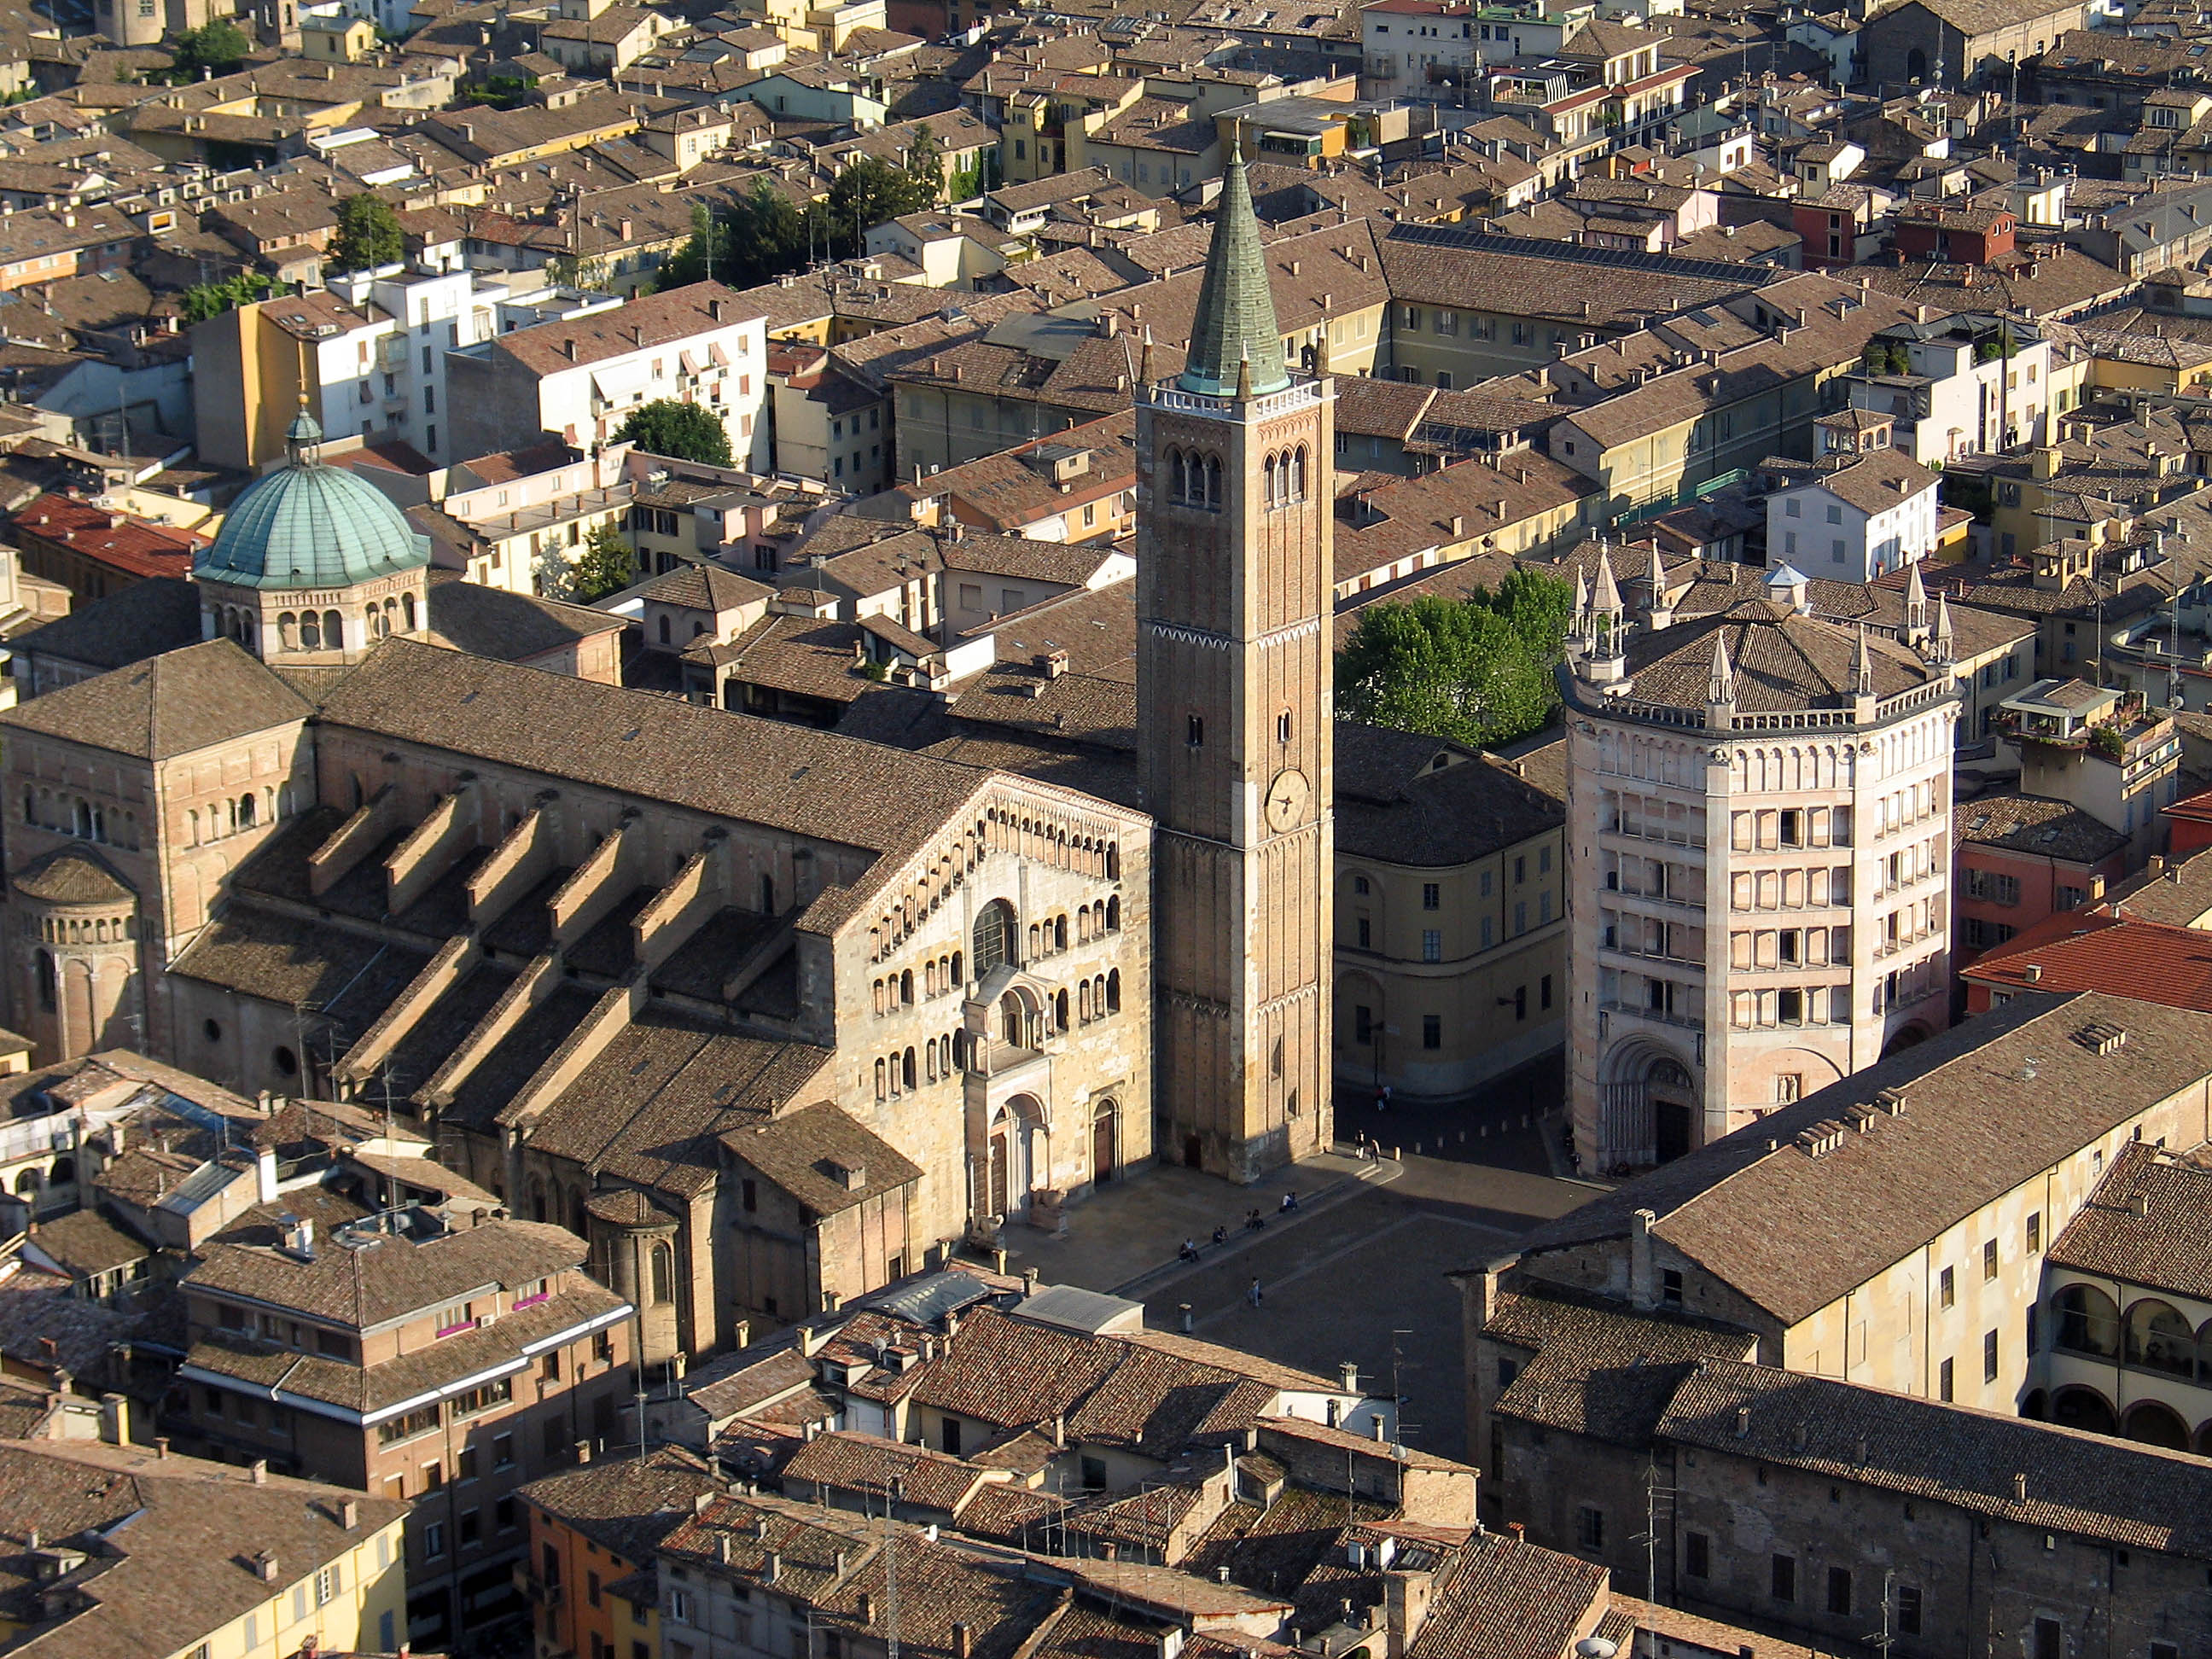 Duomo e Battistero di Parma